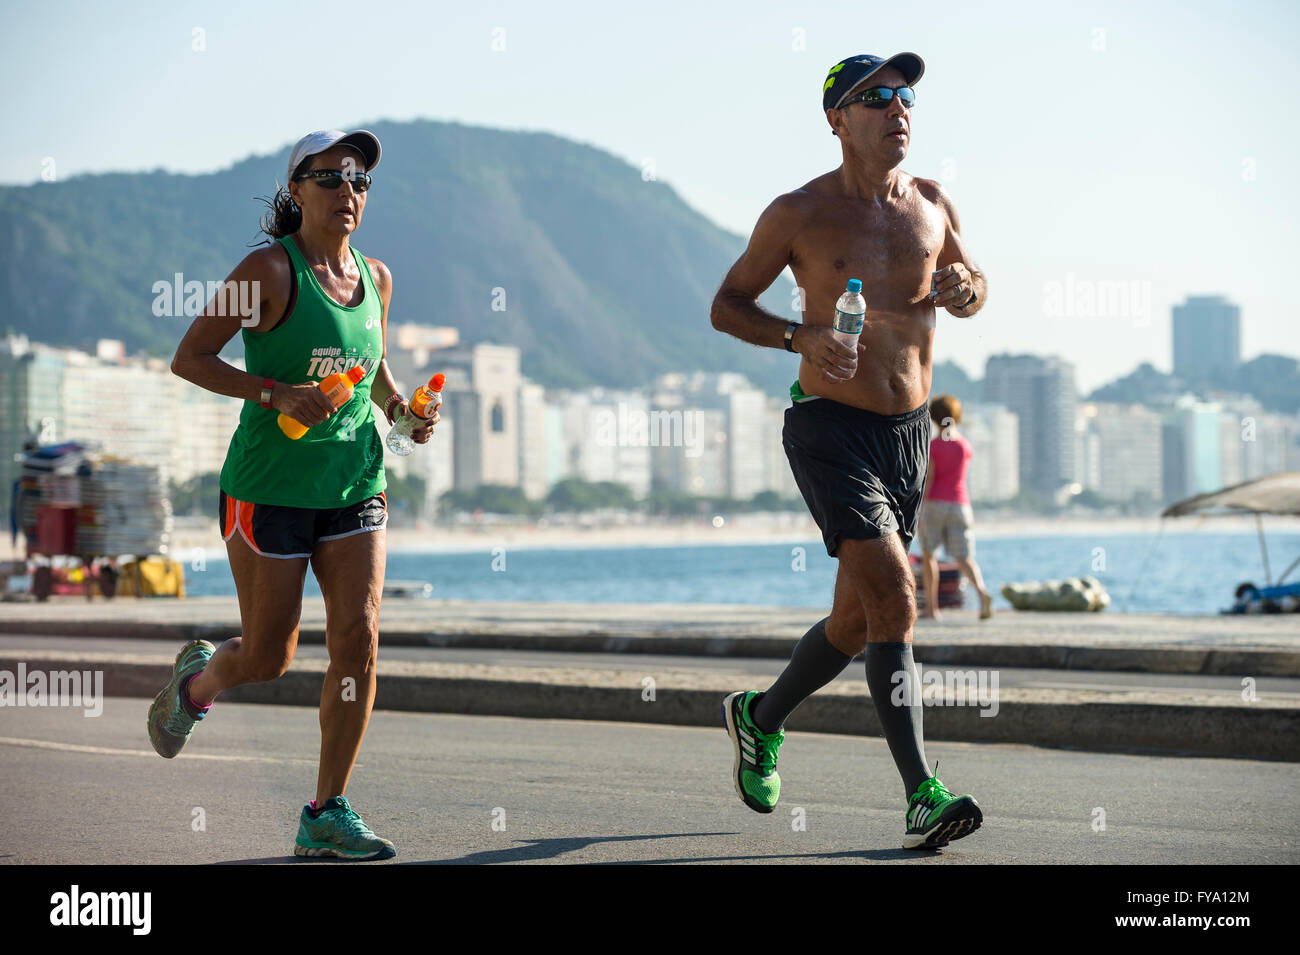 RIO DE JANEIRO - 3. April 2016: Ein paar Jogger auf die auf dem Strand Straßenpass vor der Skyline der Stadt Copacabana Stockfoto